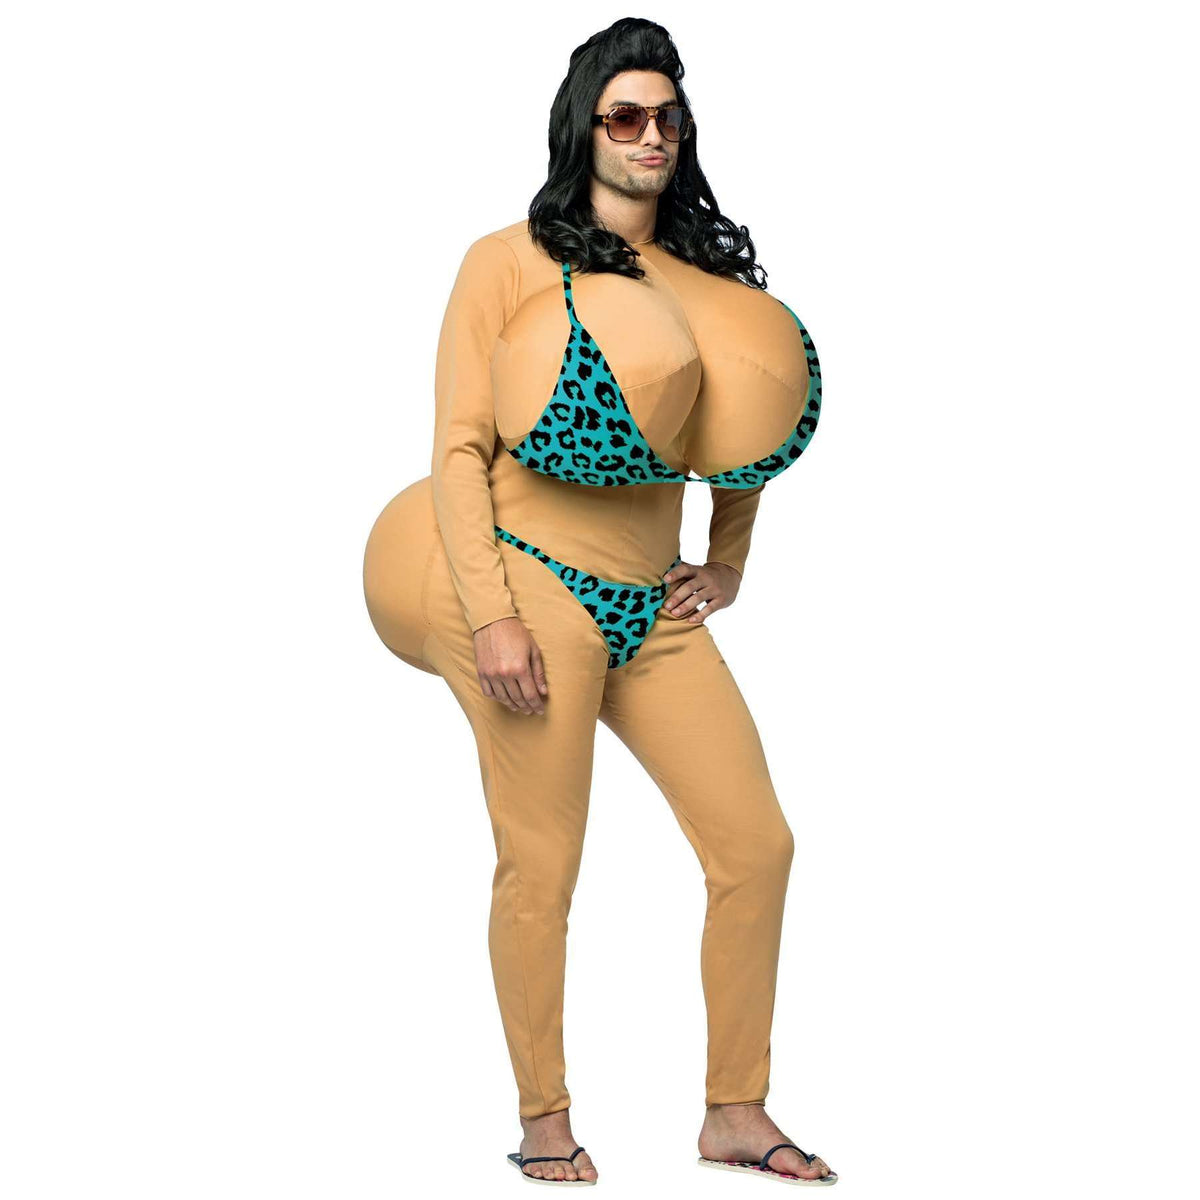 Big Bikini Boobs & Butt Adult Costume